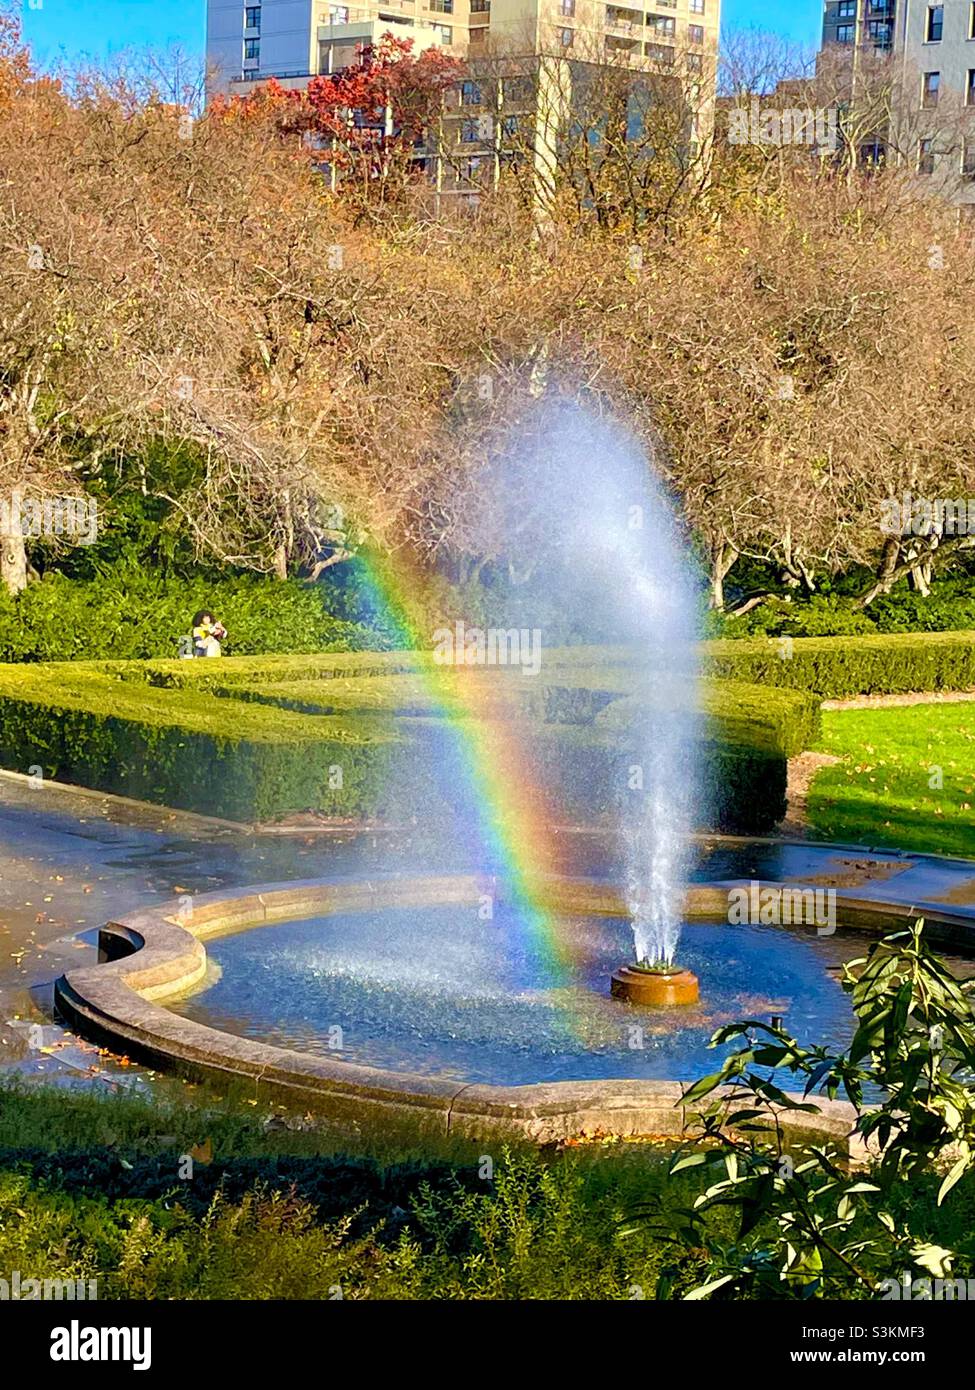 Un arc-en-ciel apparaît dans le jet d'eau de la fontaine Burnet dans le jardin d'hiver de Central Park à New York Banque D'Images